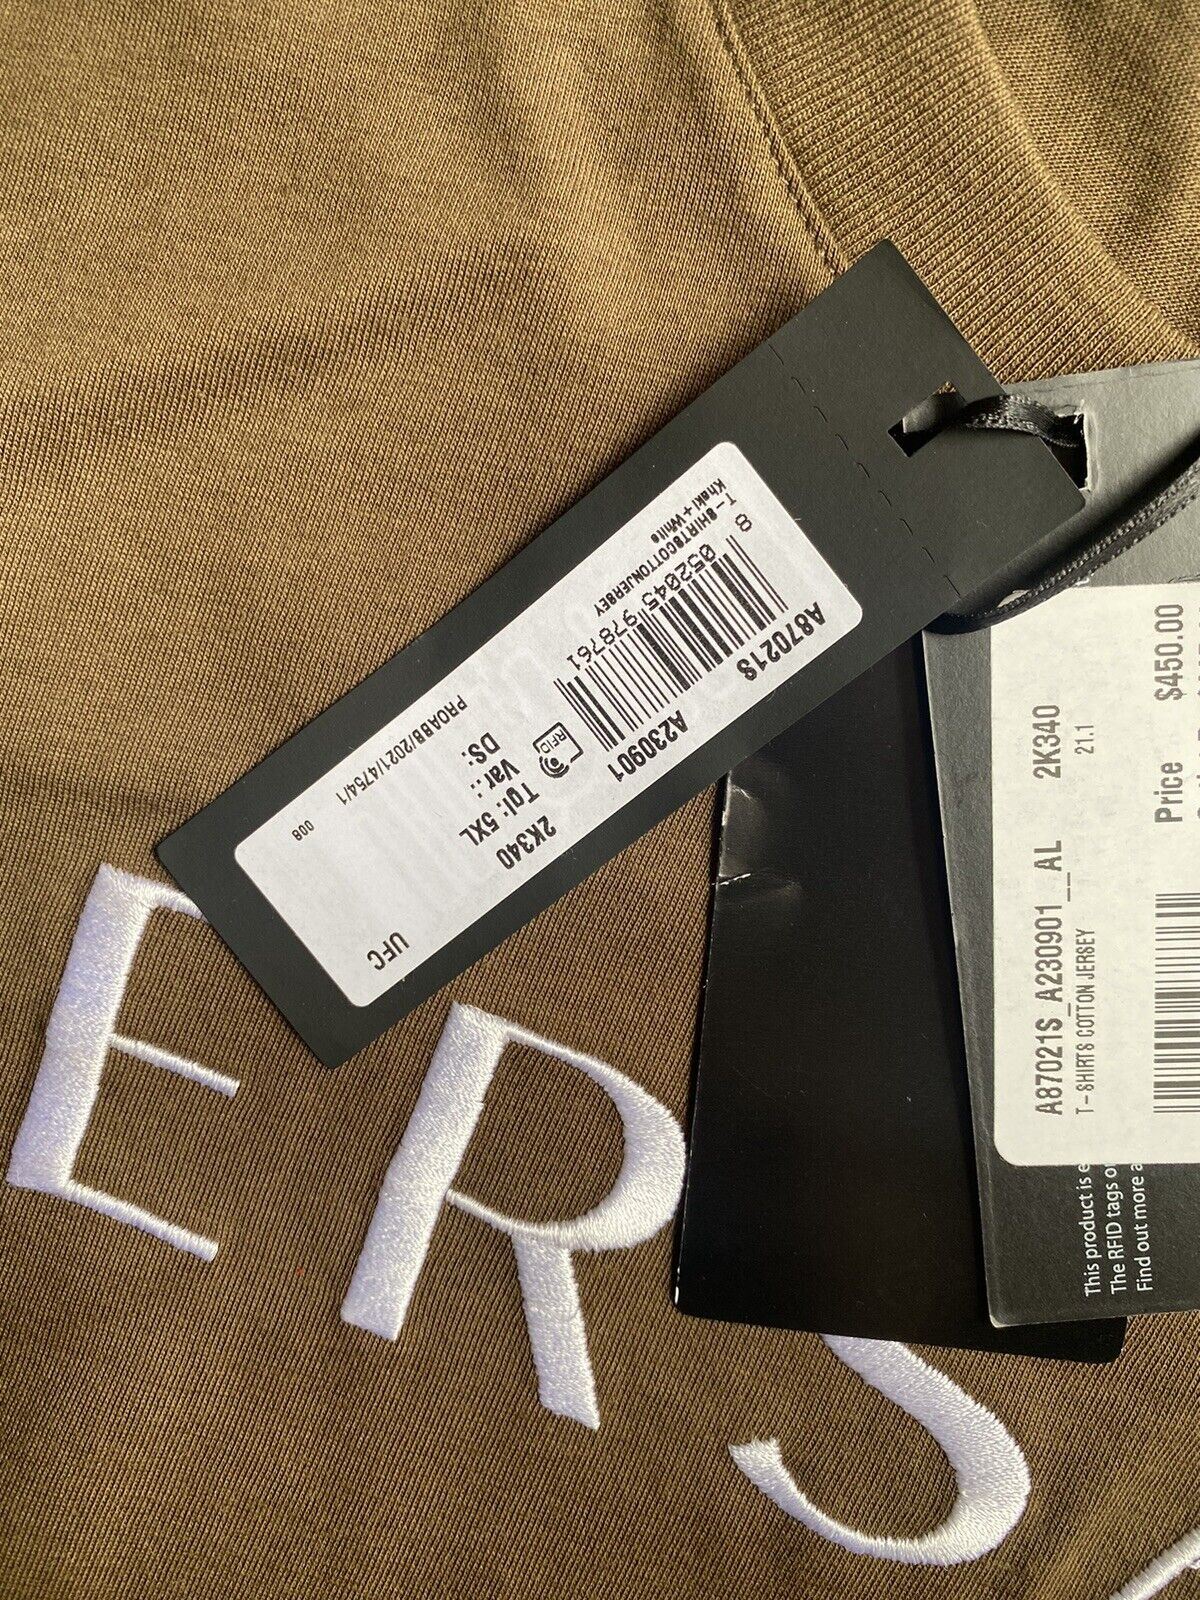 NWT $450 Versace Knit Logo Crew Neck Khaki Jersey T-Shirt 5XL (Fits 4XL) A230901